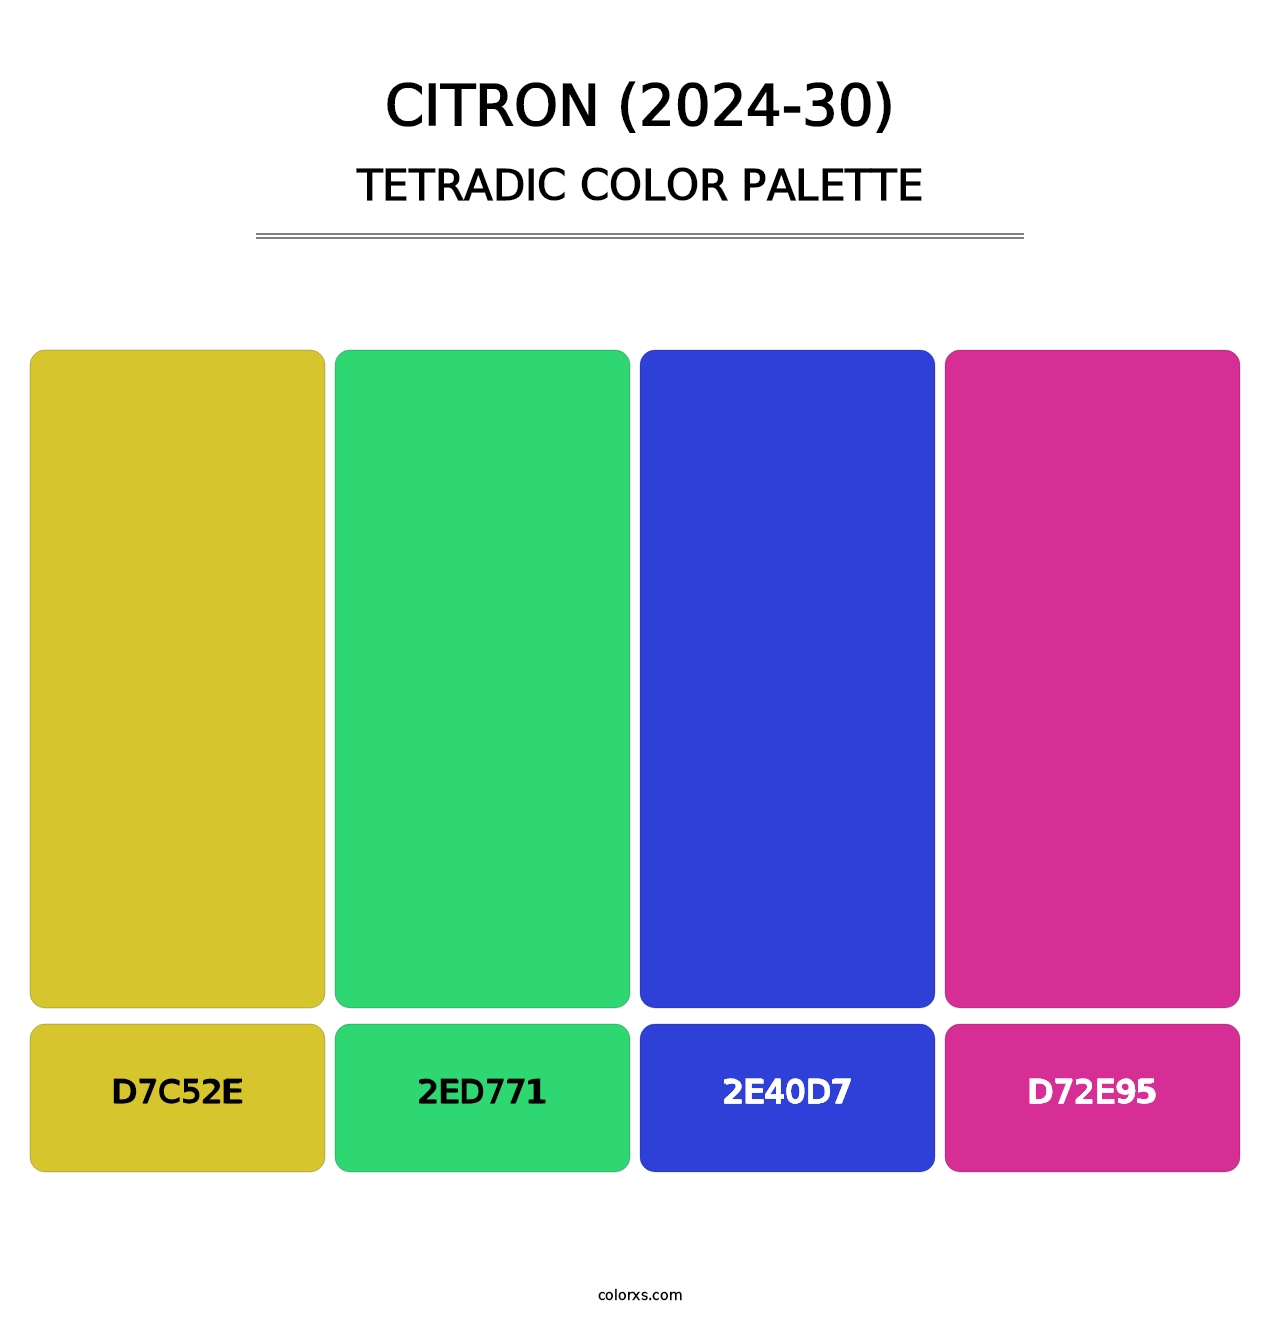 Citron (2024-30) - Tetradic Color Palette